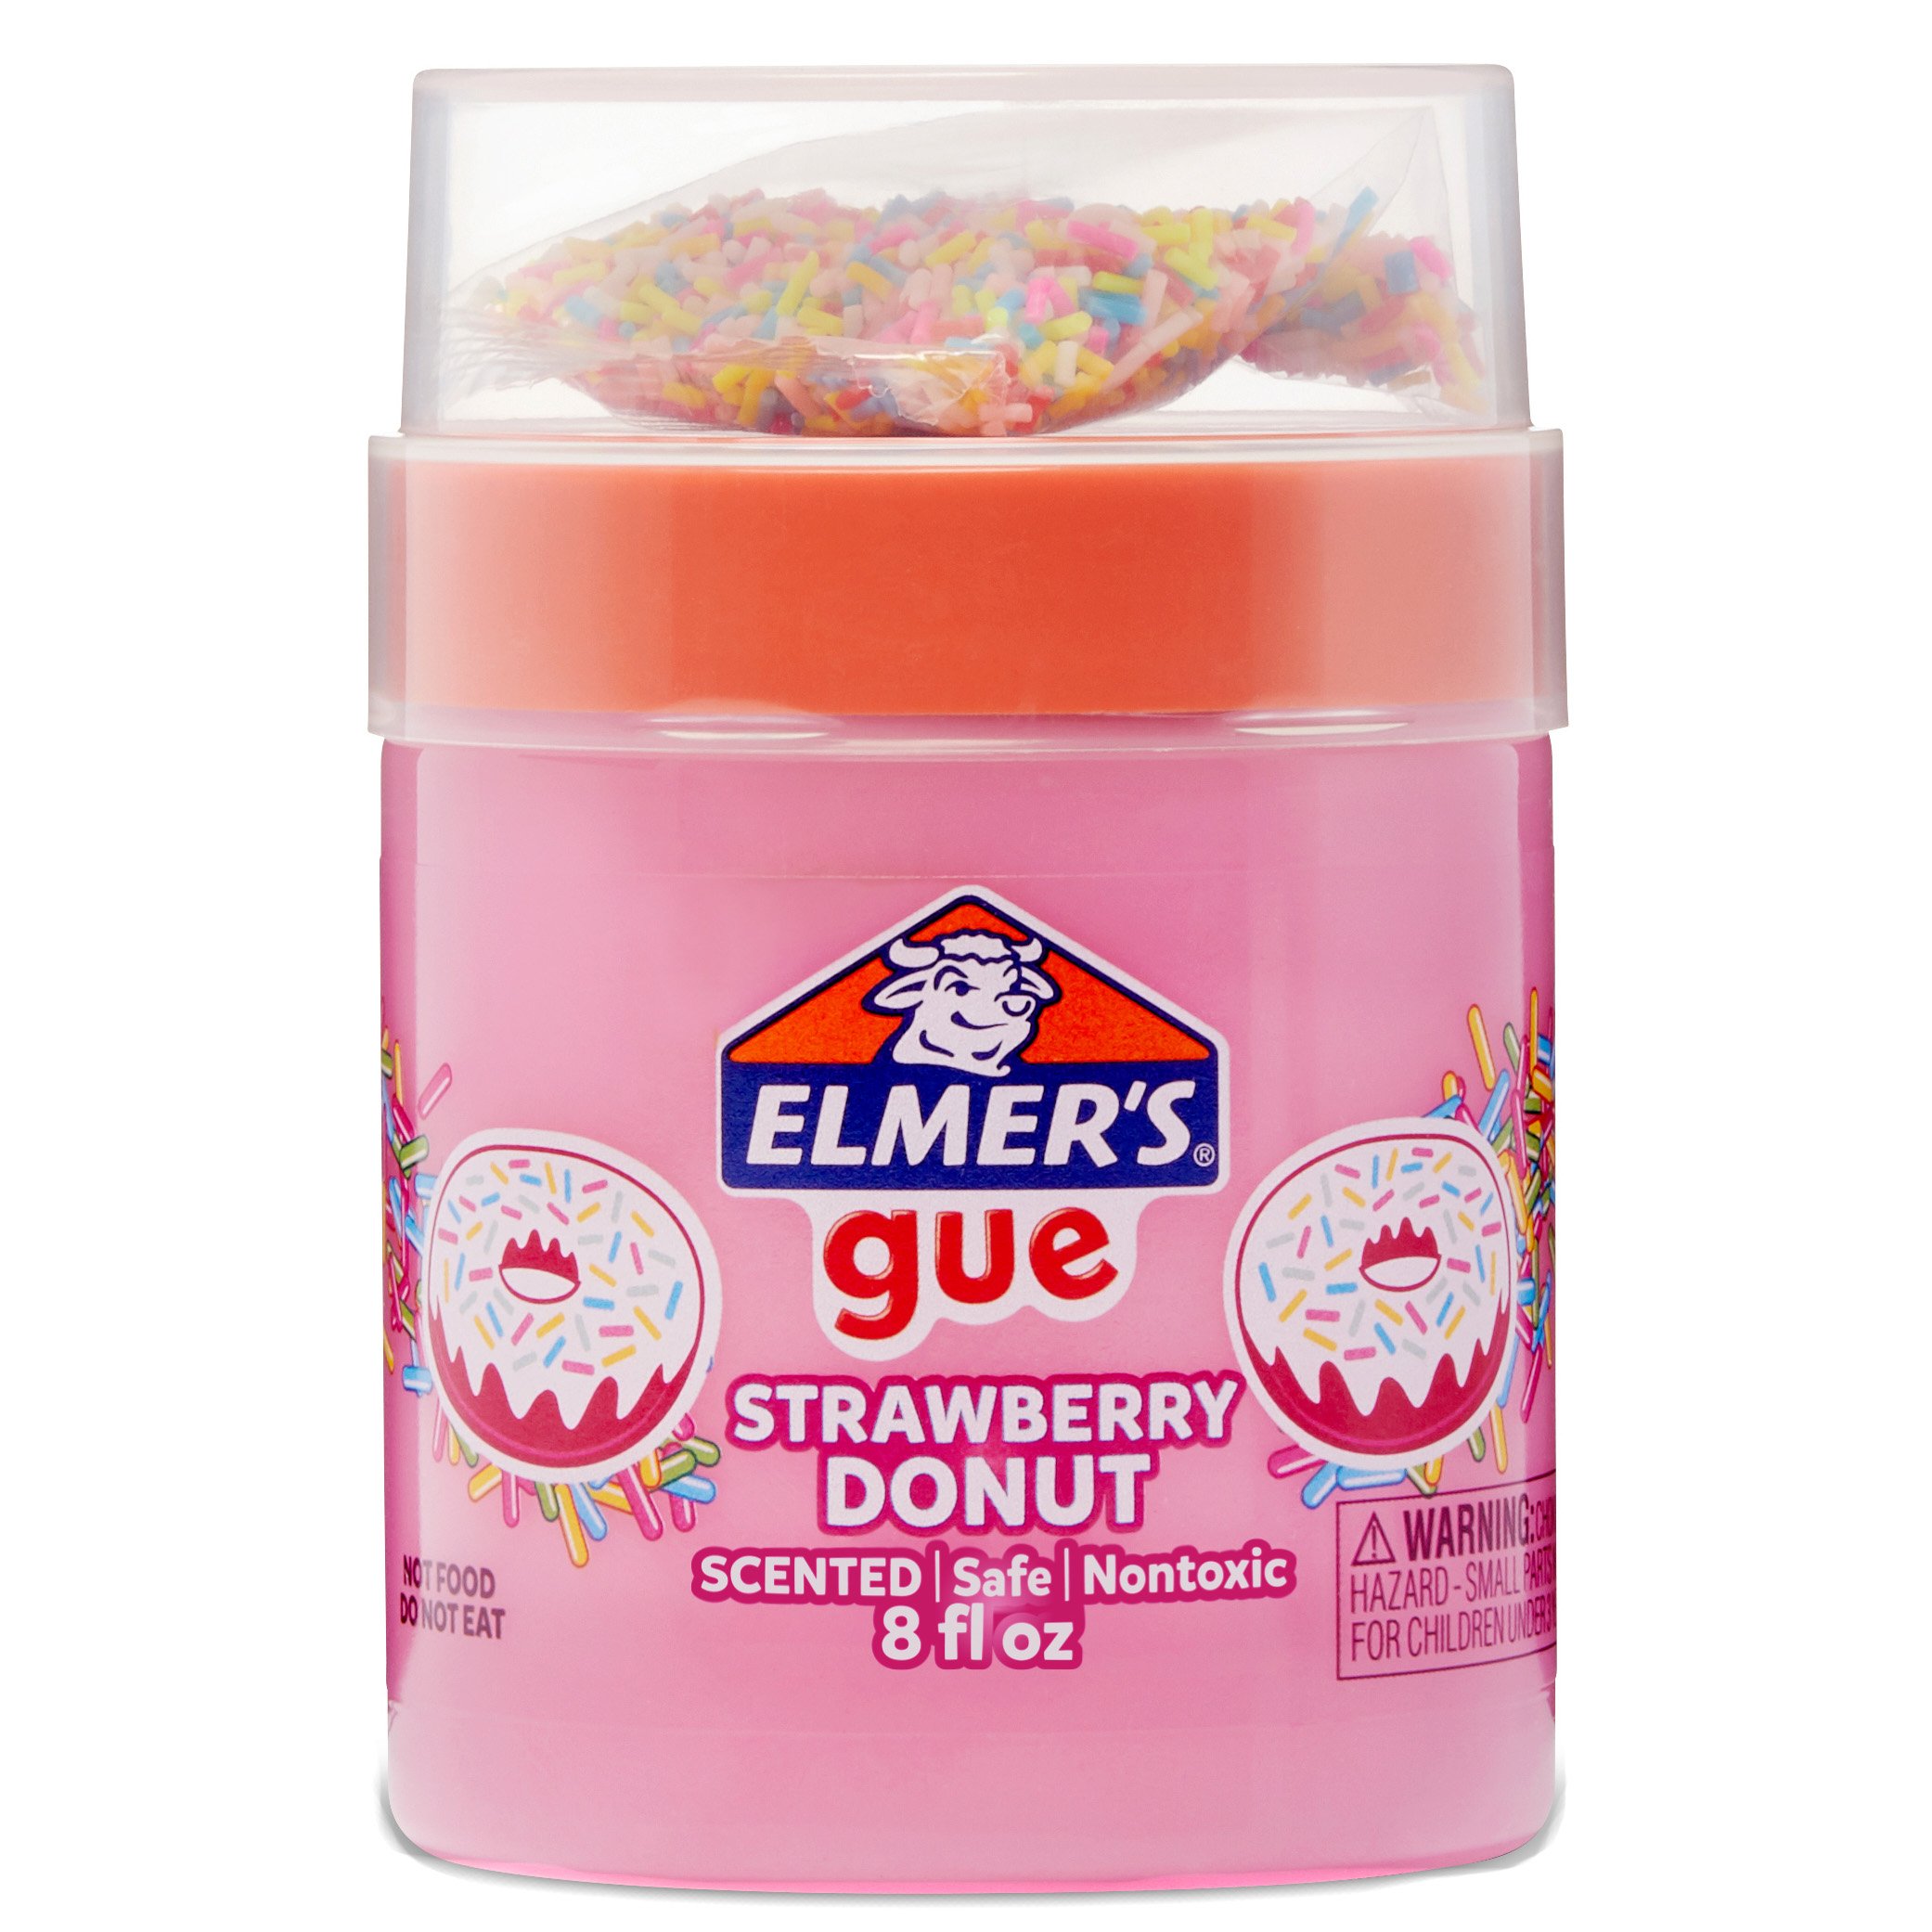 Elmer's Gue, Fruity Slushie - 8 fl oz